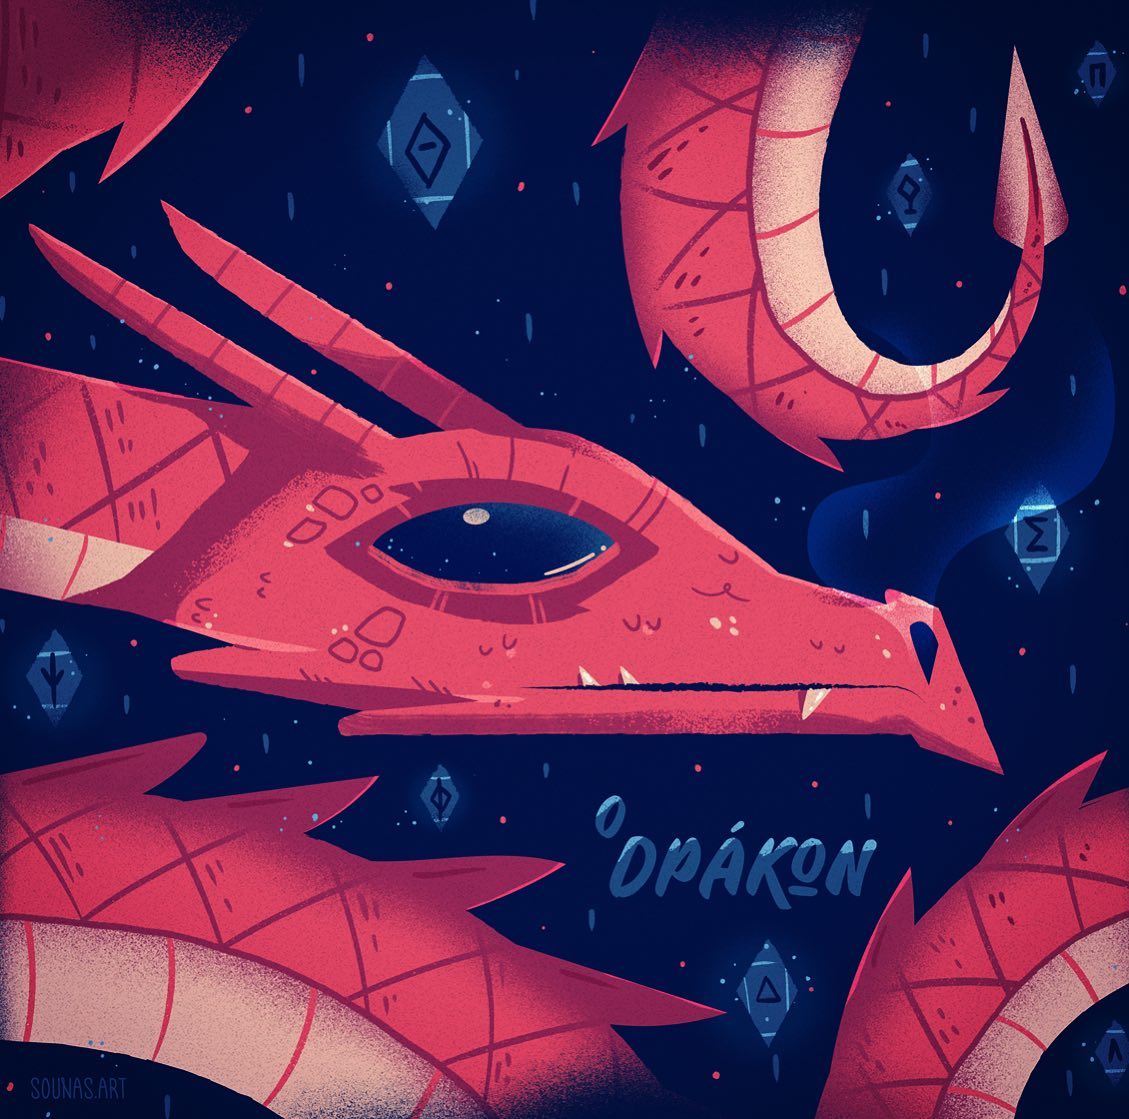 :::Ο Δράκων - O Drakon:::...#rpg #dnd #dragonillustration #dragon #monster #illustration #illustrationoftheday #illustrationsoftheday #adobedrawing #gems #fantasy #εικονογράφηση #sounasart #δράκος #δράκων